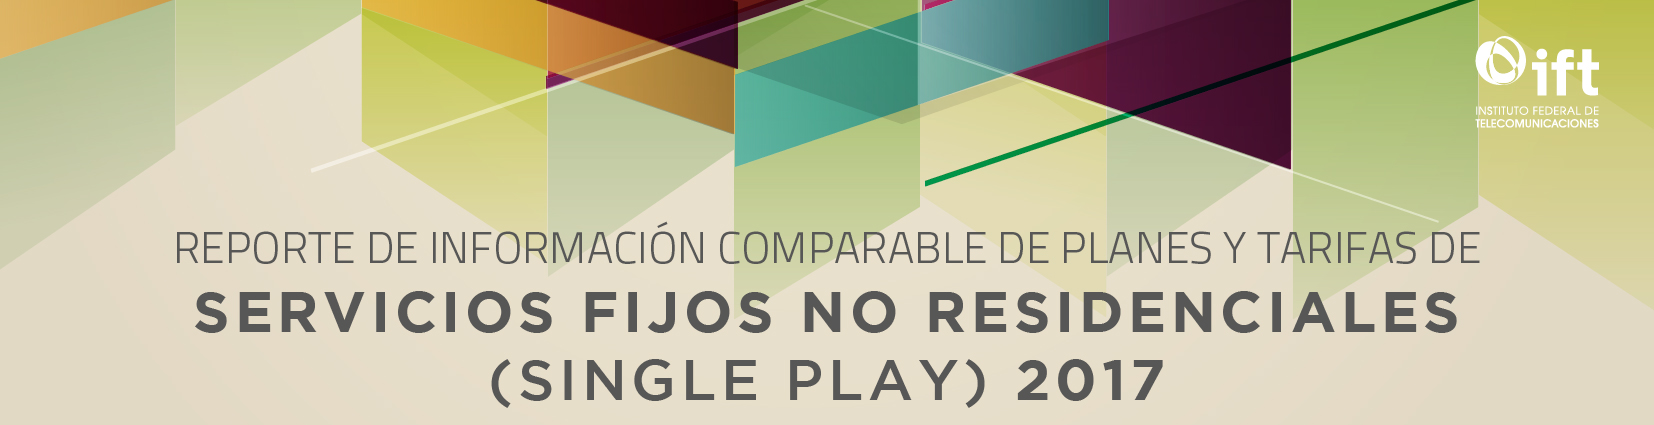 Reporte de Información Comparable de Planes y Tarifas de Servicios Fijos No Residenciales (Single Play) 2017